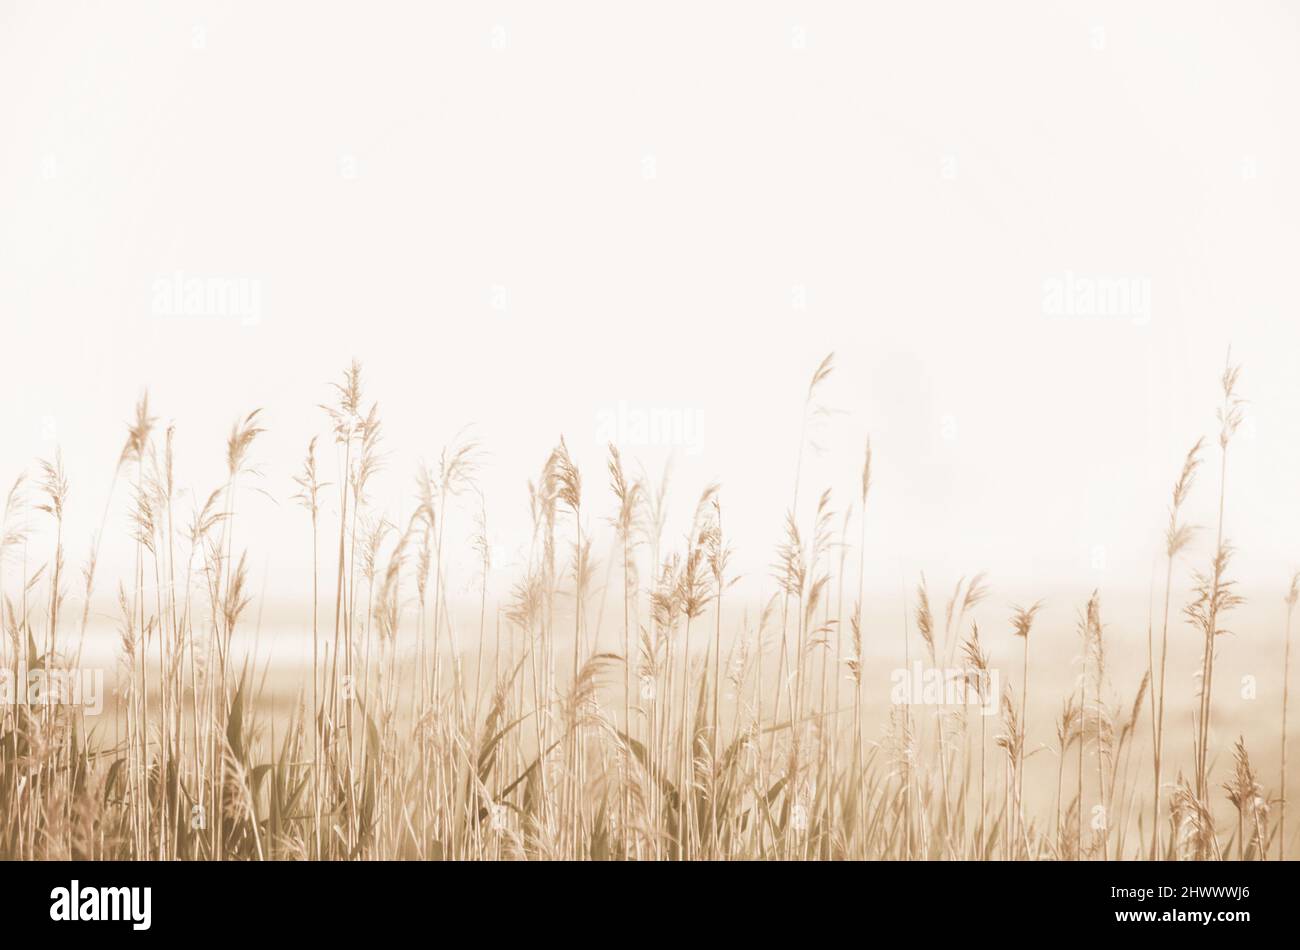 Seppia monocromatica tonalità naturale sfondo morbido fuoco paesaggio saltmarsh con canne comuni nella nebbia con spazio di copia, spazio vuoto per il testo Foto Stock